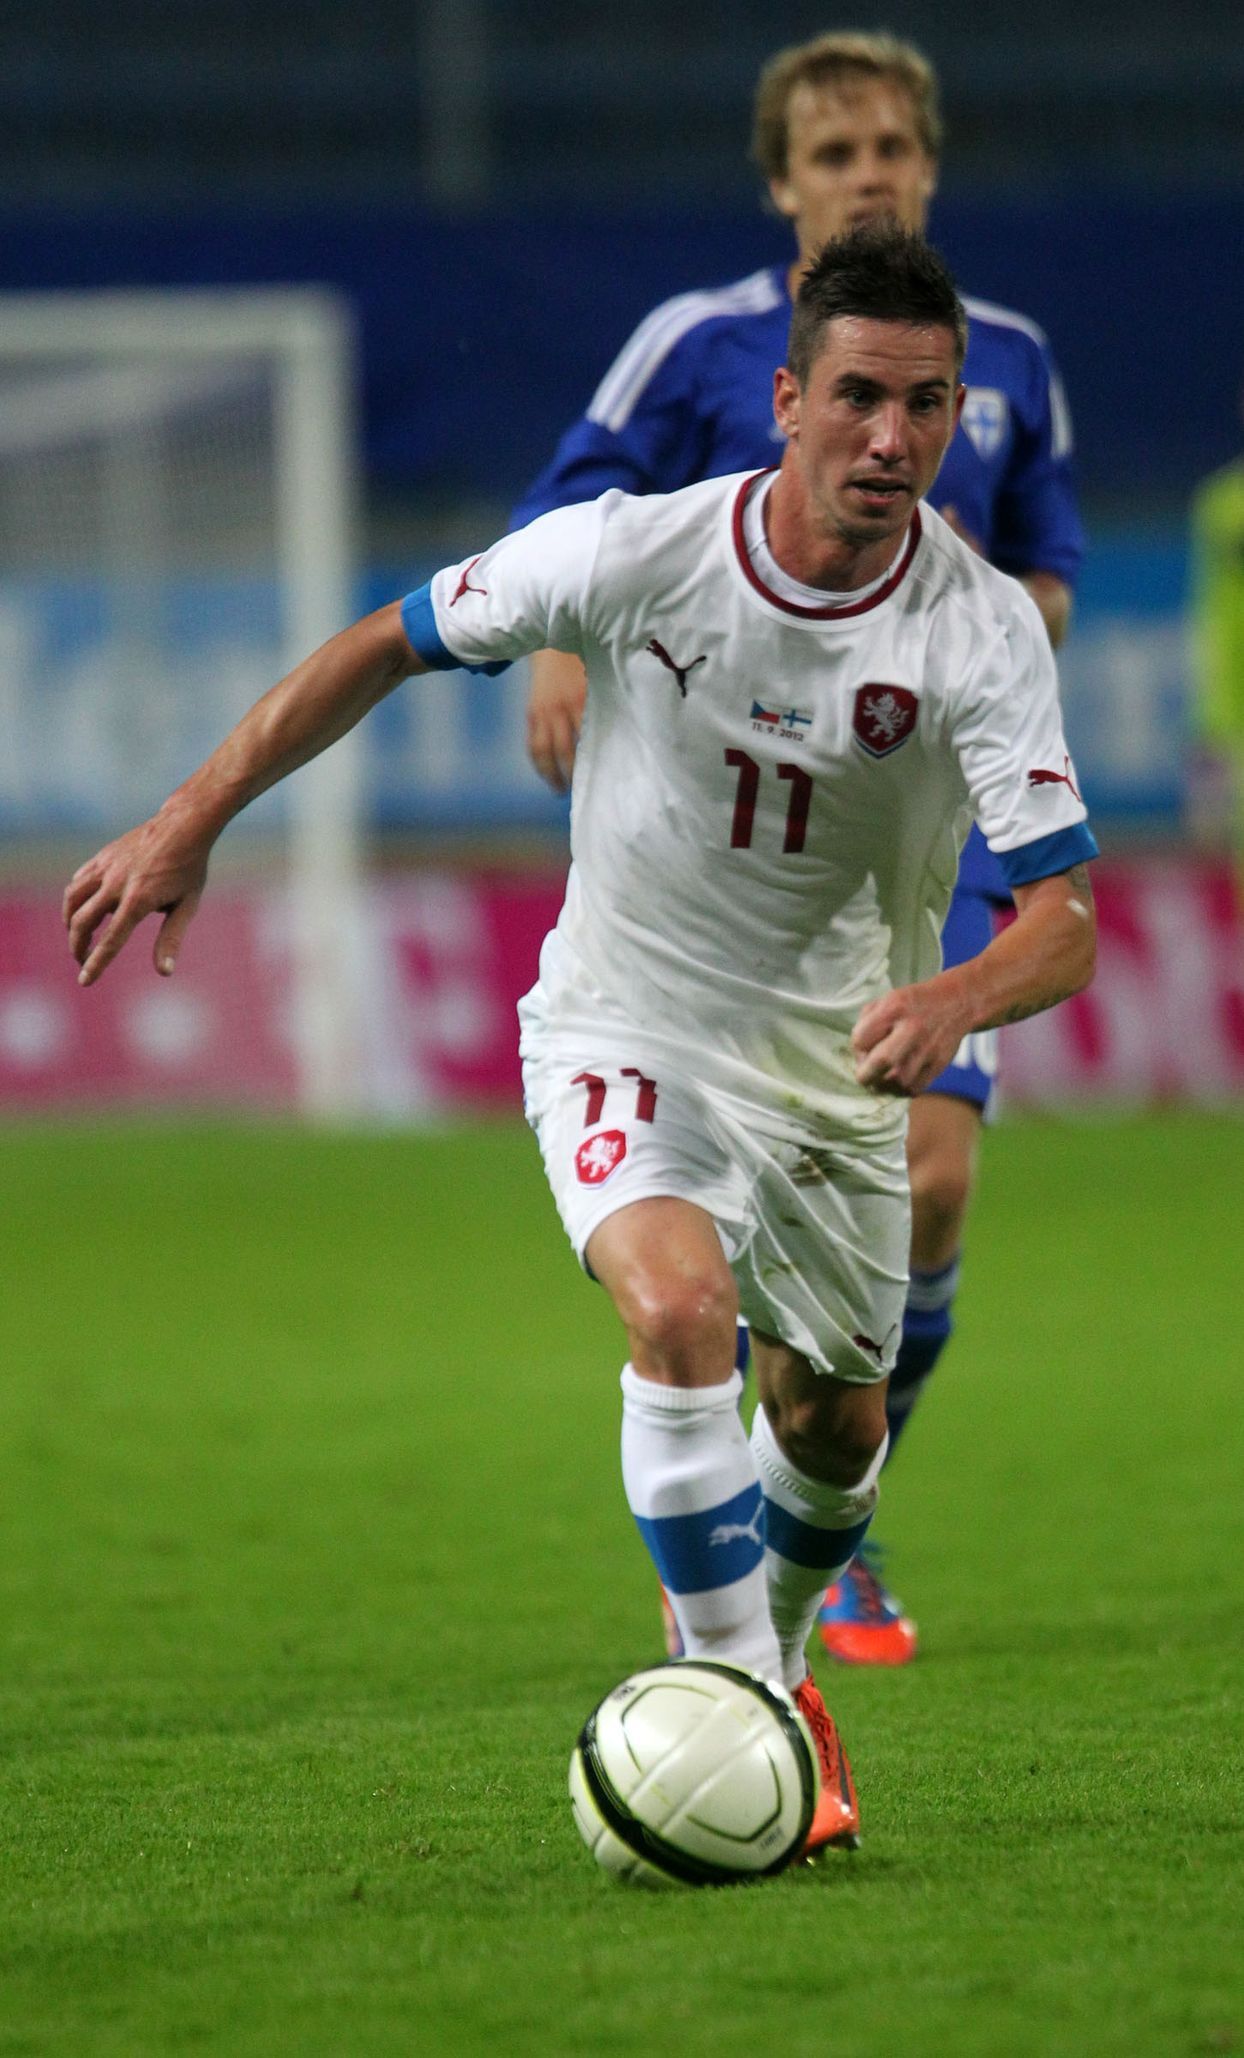 Fotbalista Milan Petržela v přípravném utkání České republiky s Finskem.